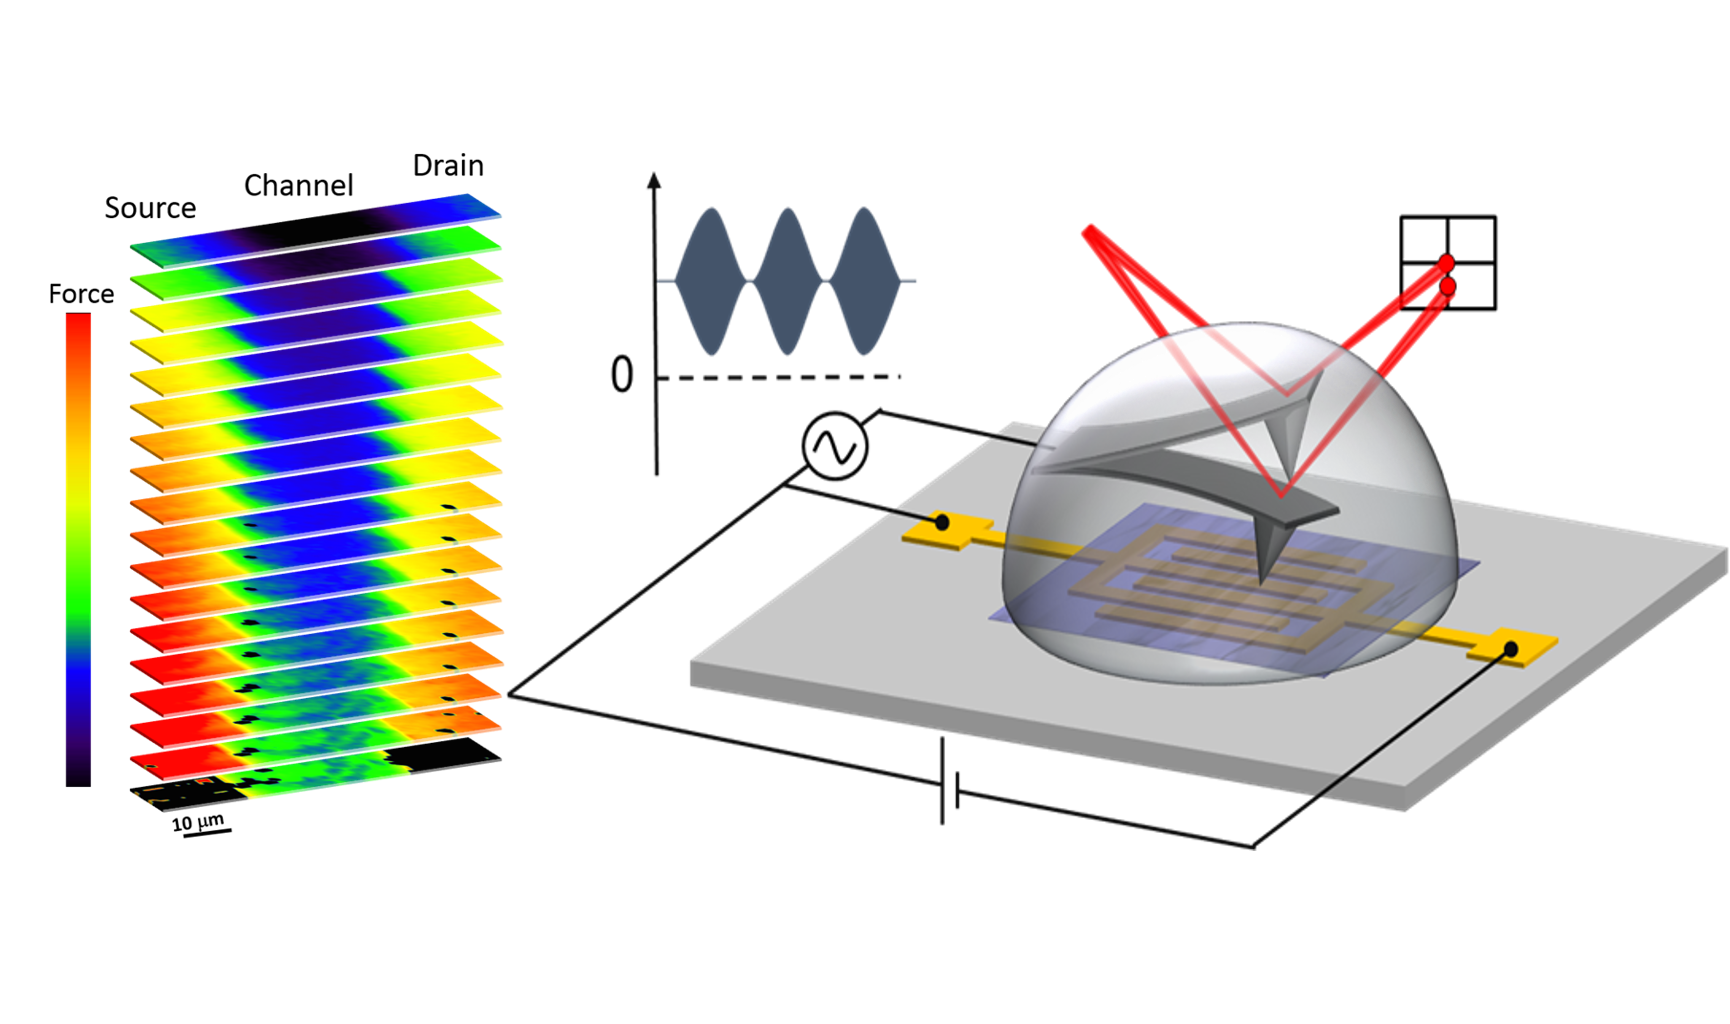 Representació esquemàtica de la configuració del microscopi dielèctric de rastreig en medi líquid utilitzat per mesurar les propietats elèctriques locals d’un transistor d’efecte de camp orgànic de tipus EGOFET.  